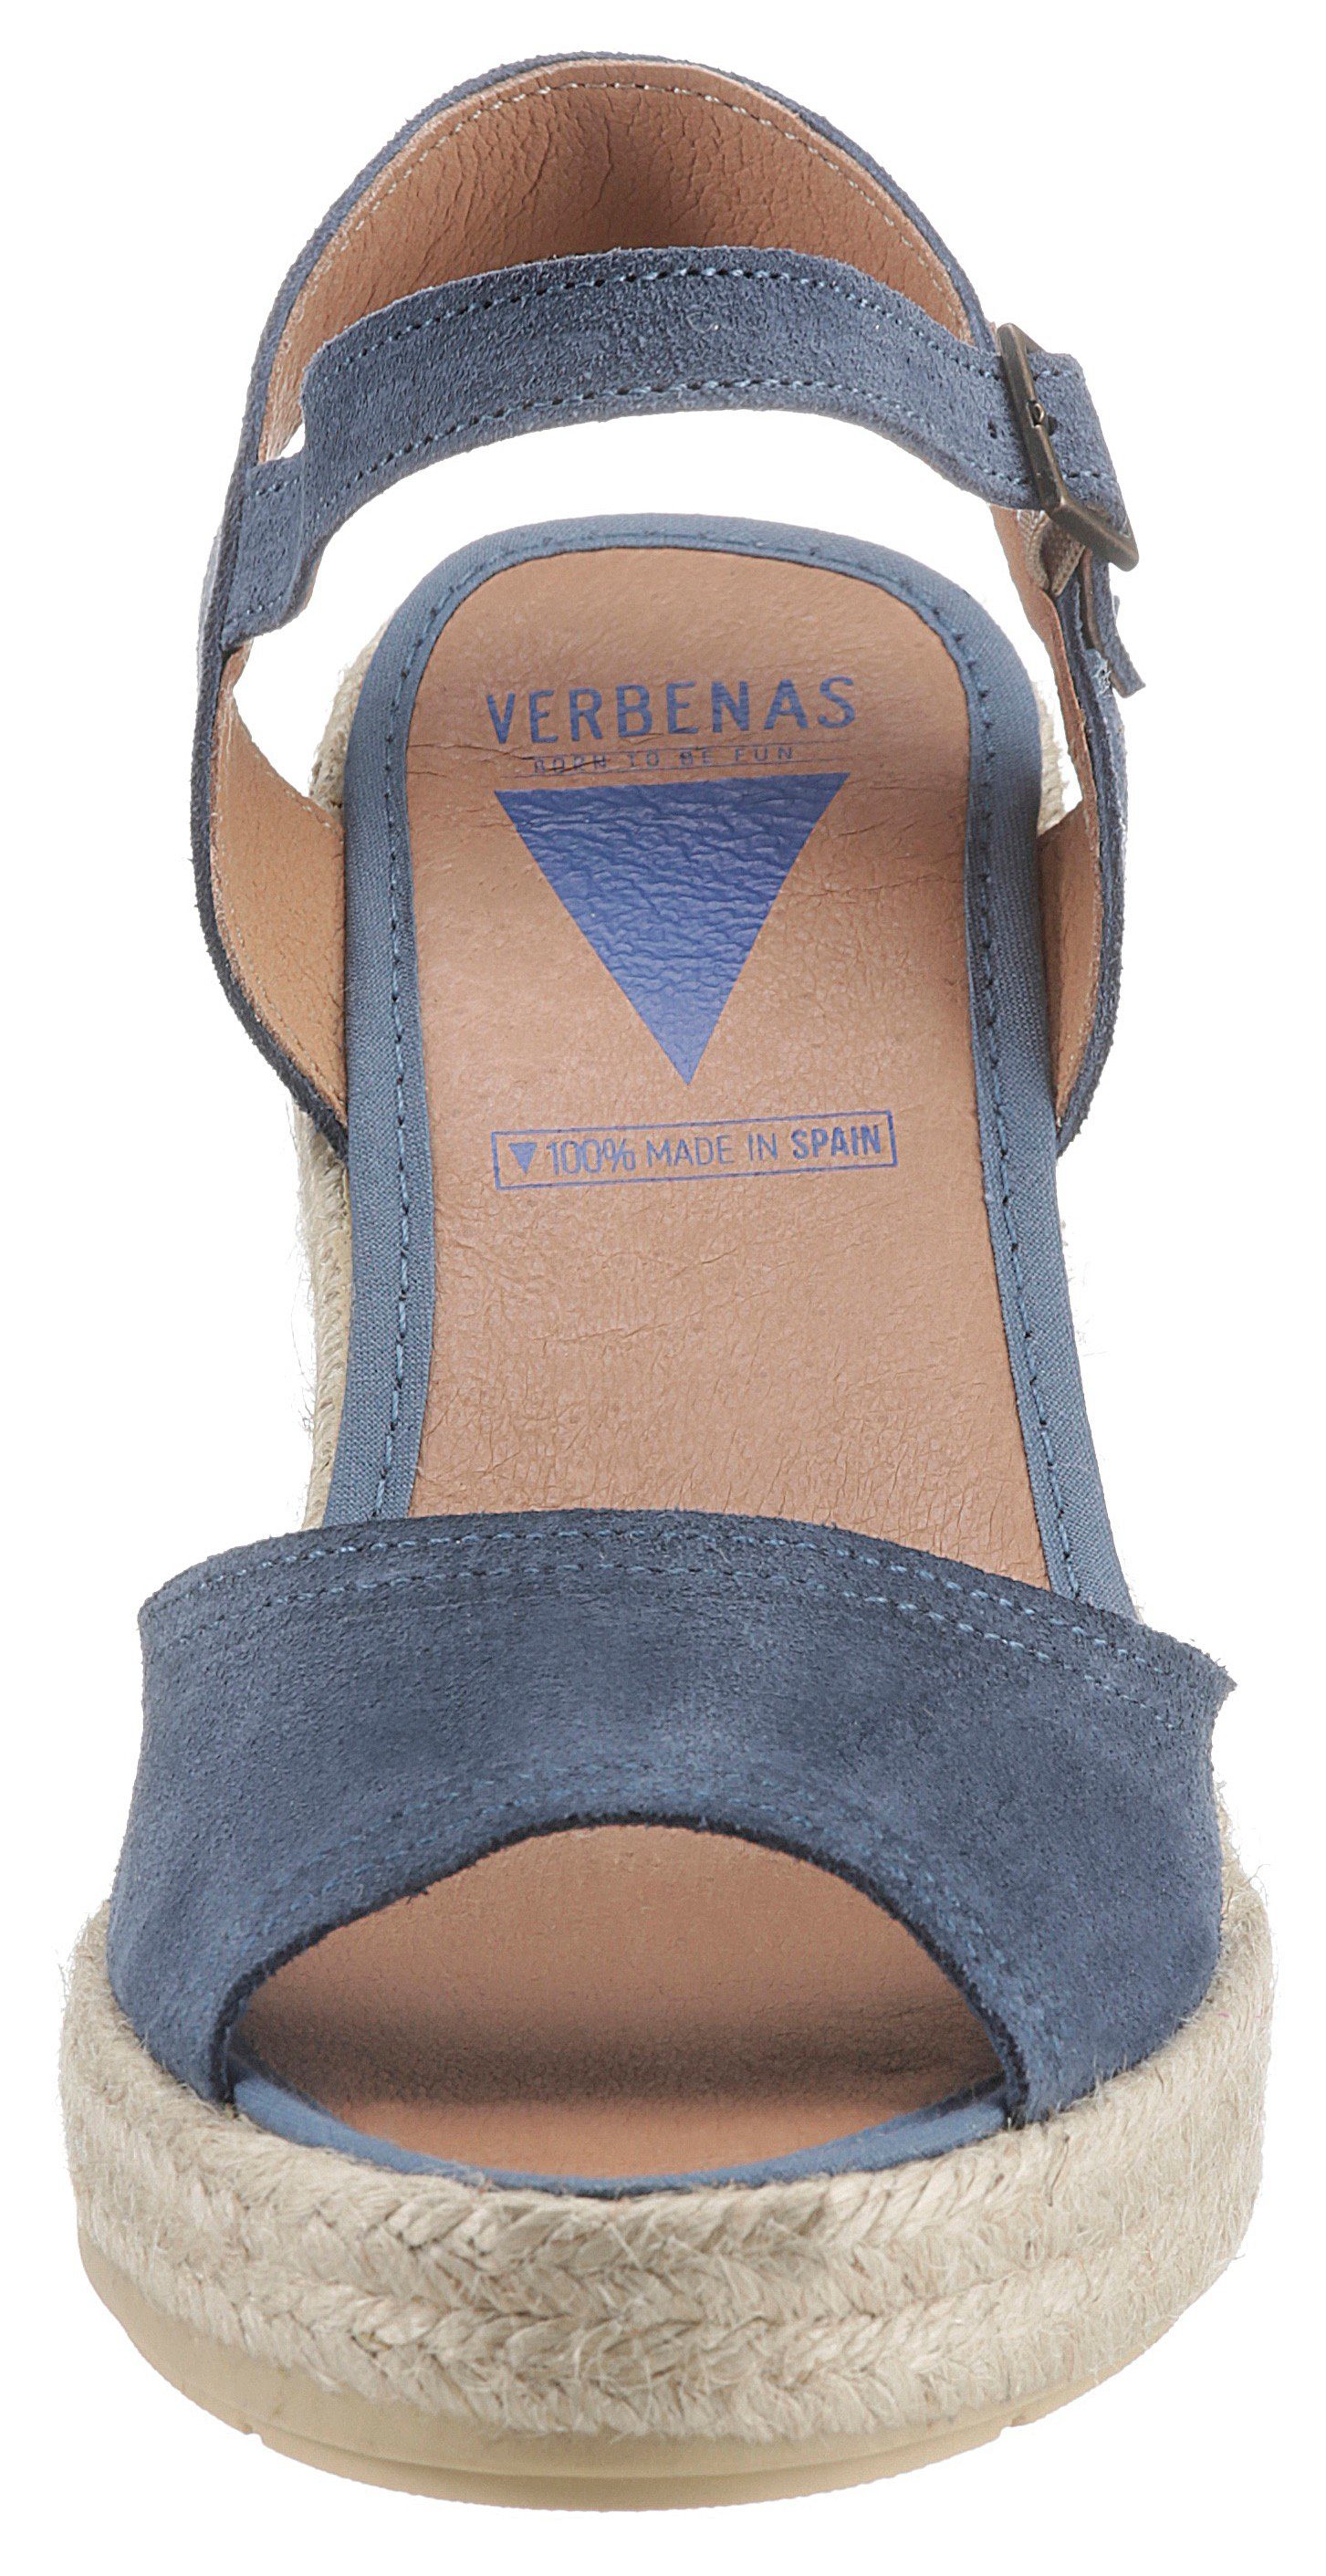 Sira mit VERBENAS Sandalette Riemchen jeansblau Sardegna verstellbarem